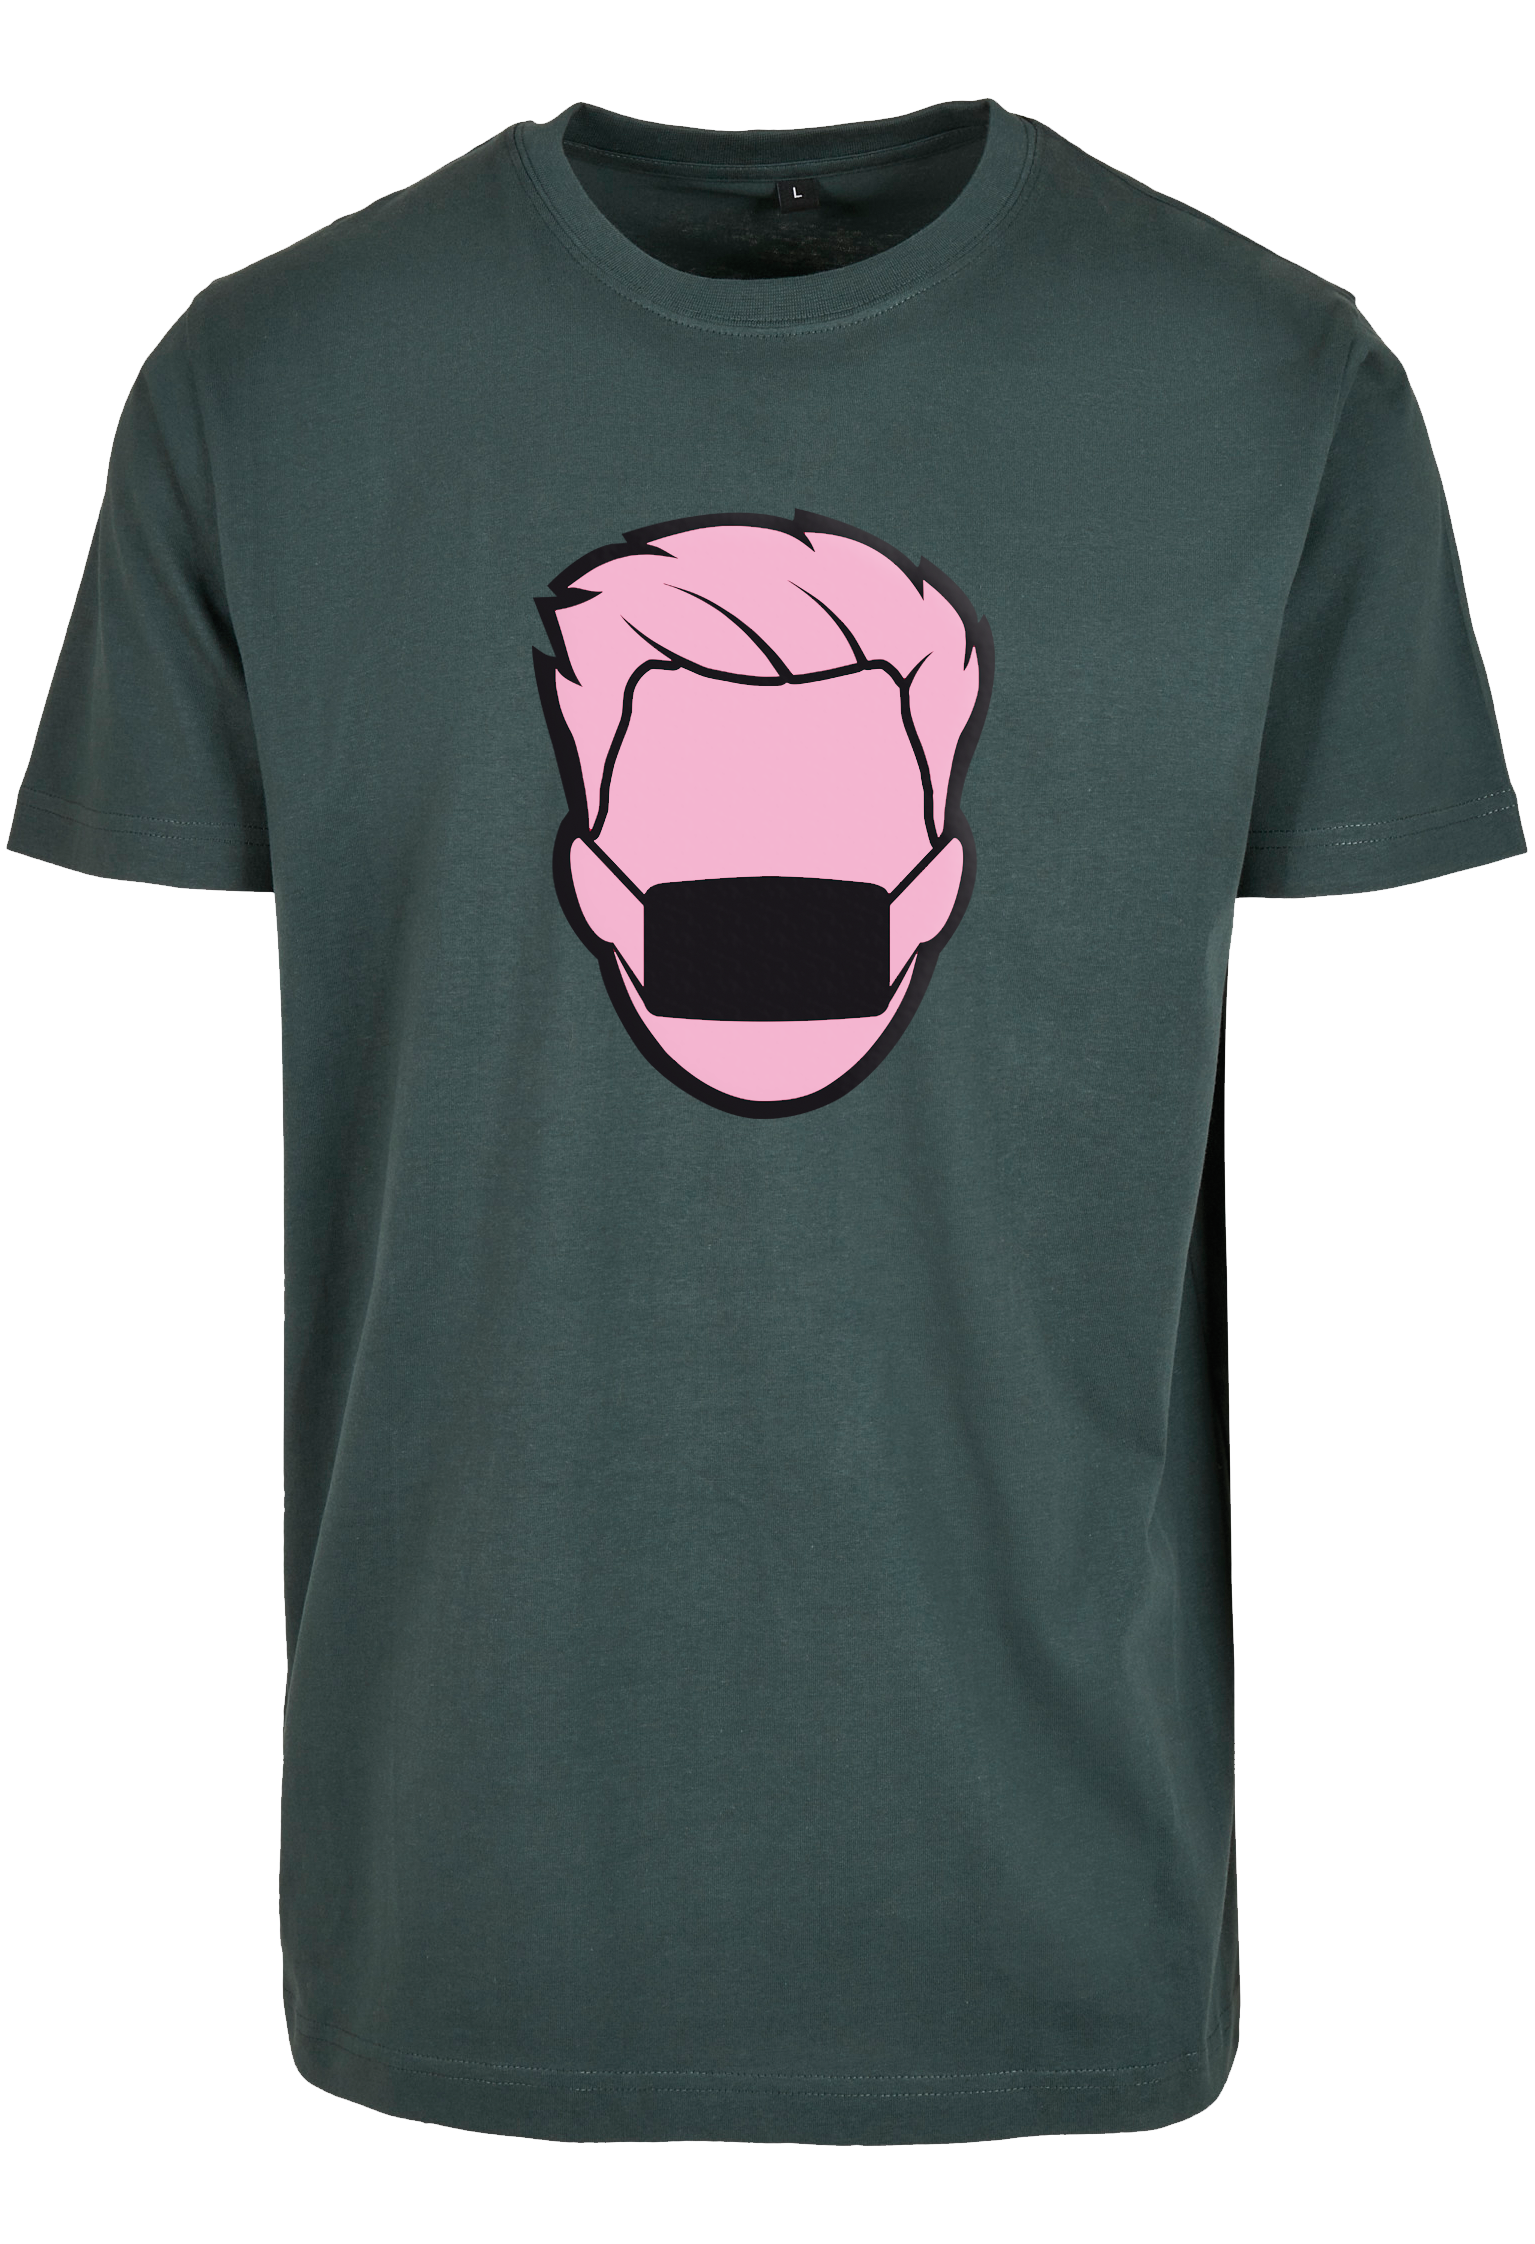 Pinkballon bottlegreen T-Shirt